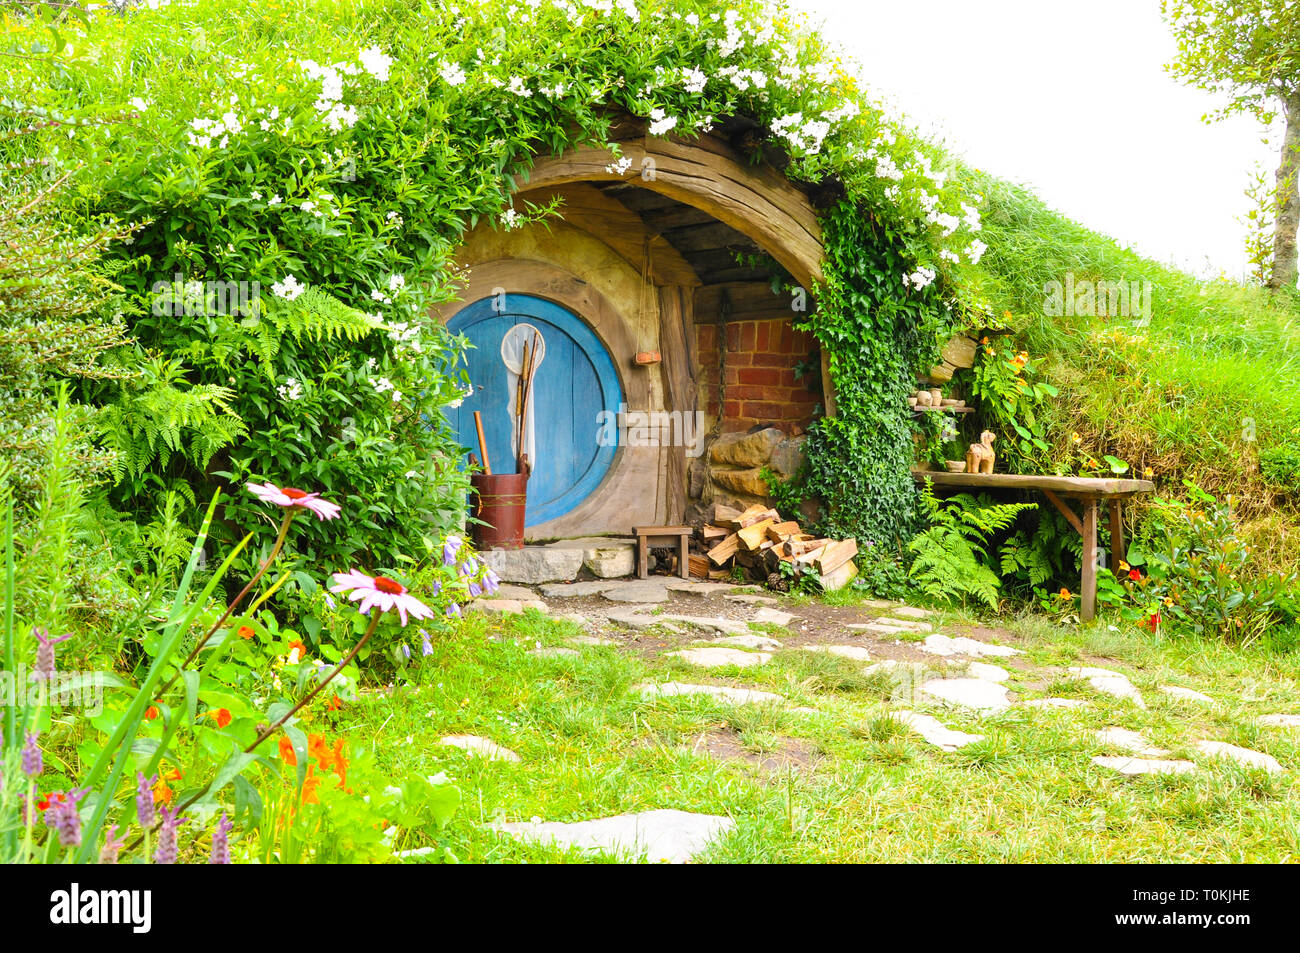 Hobbiton Movie set - Location per il Signore degli Anelli e Lo Hobbit film. Foro di Hobbit home. Attrazione turistica nella regione di Waikato in Nuova Zelanda Foto Stock